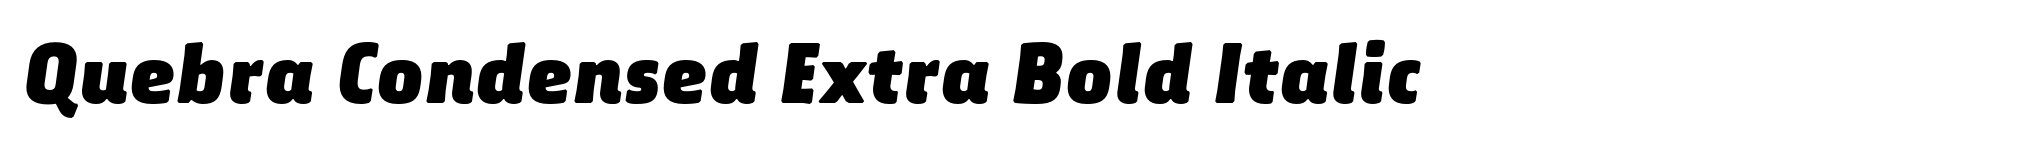 Quebra Condensed Extra Bold Italic image